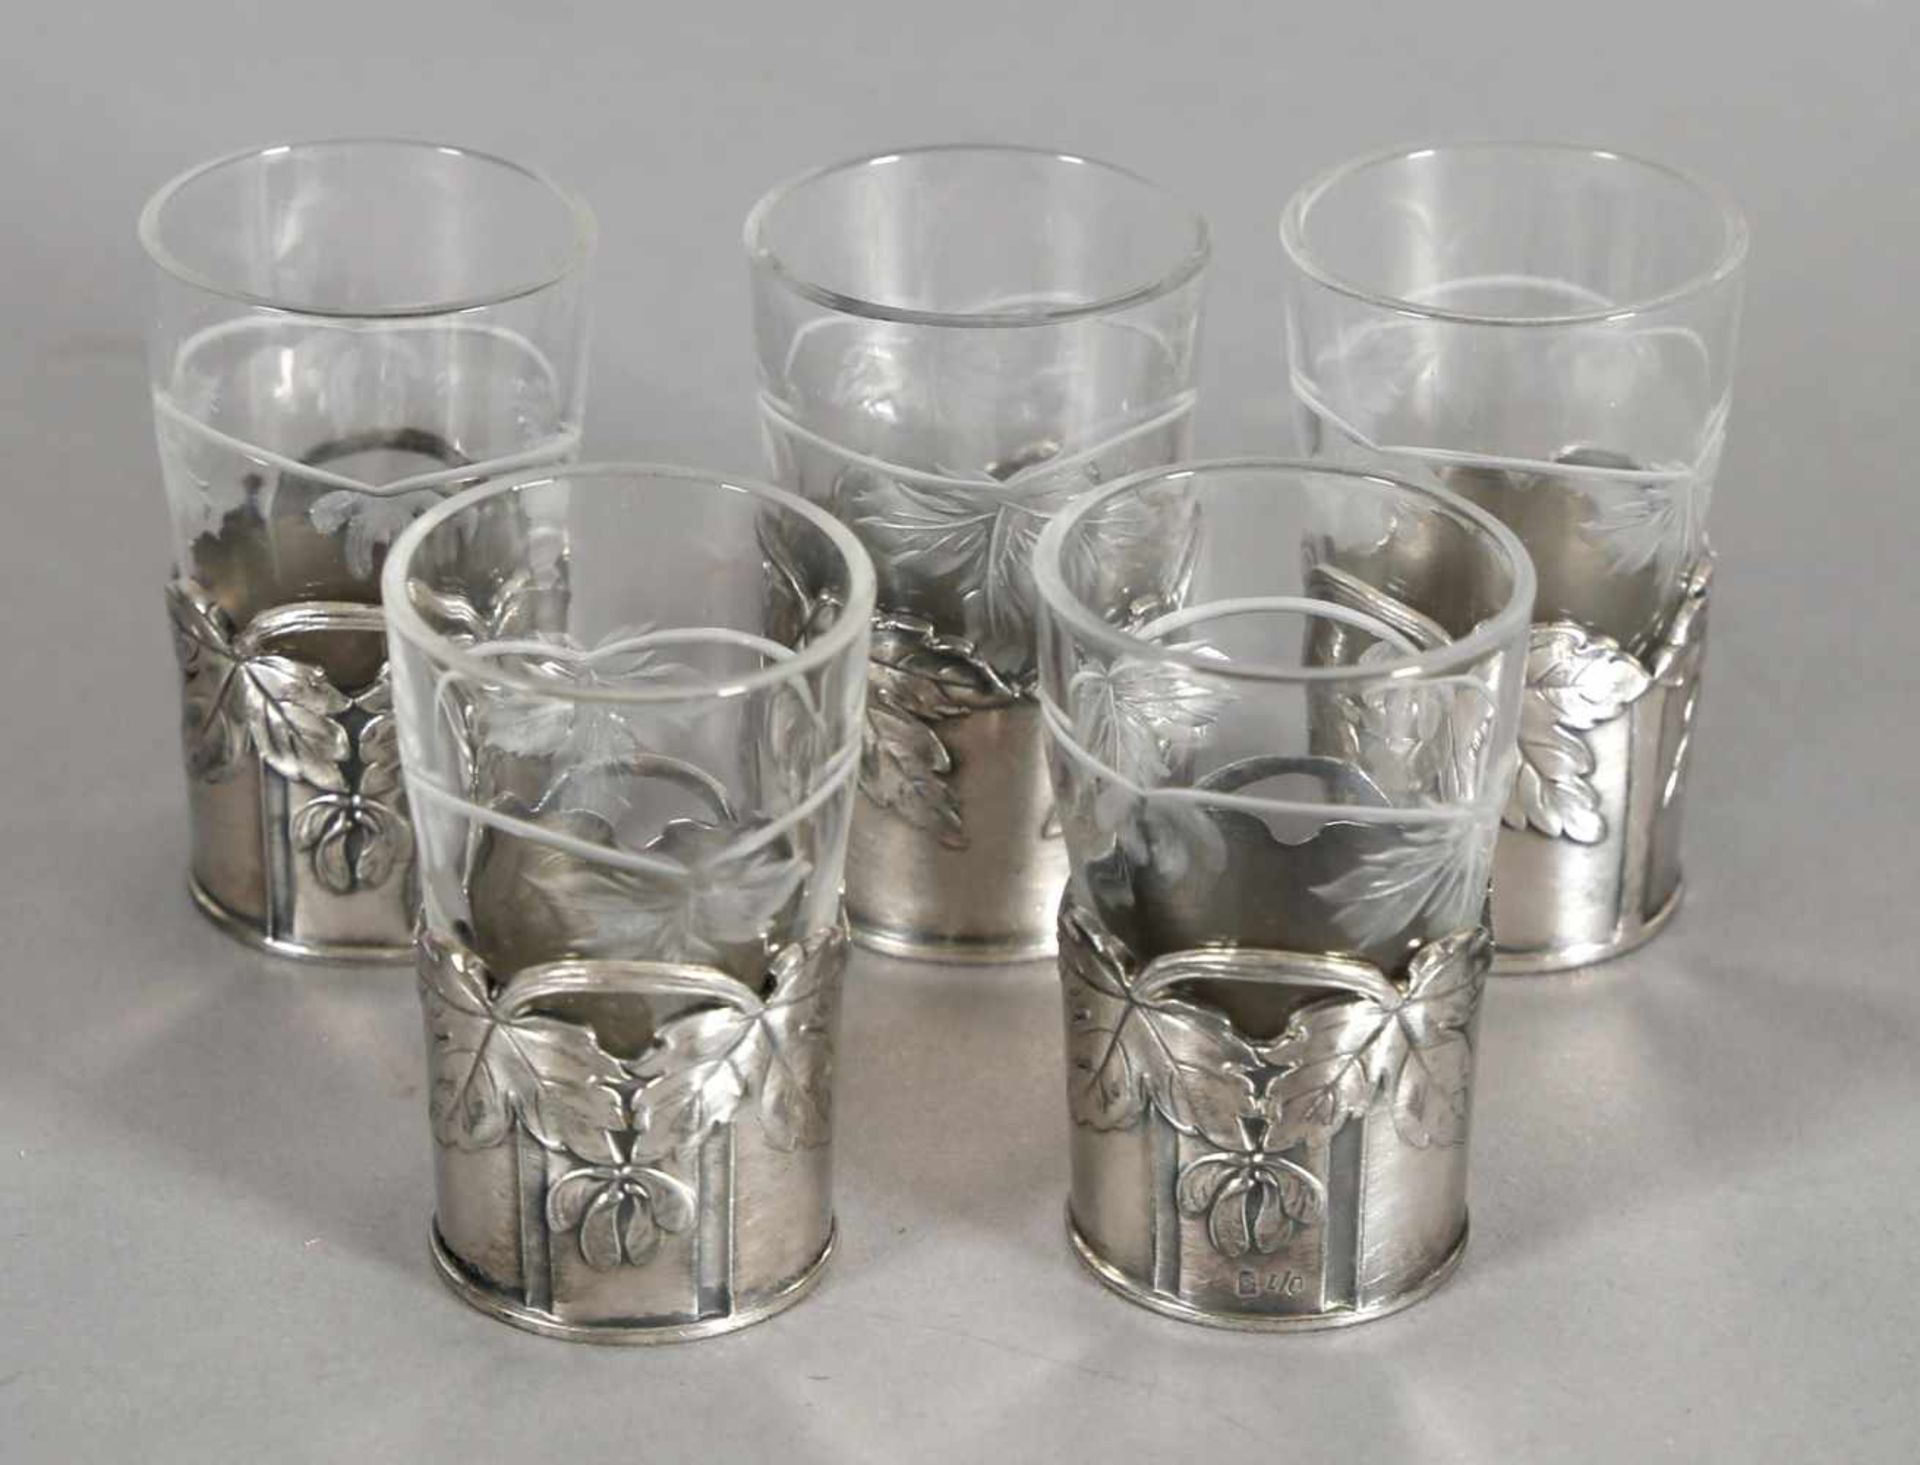 Fünf Schnapsbecher aus Glas mit Zinnhalterung, WMF, um 1900<